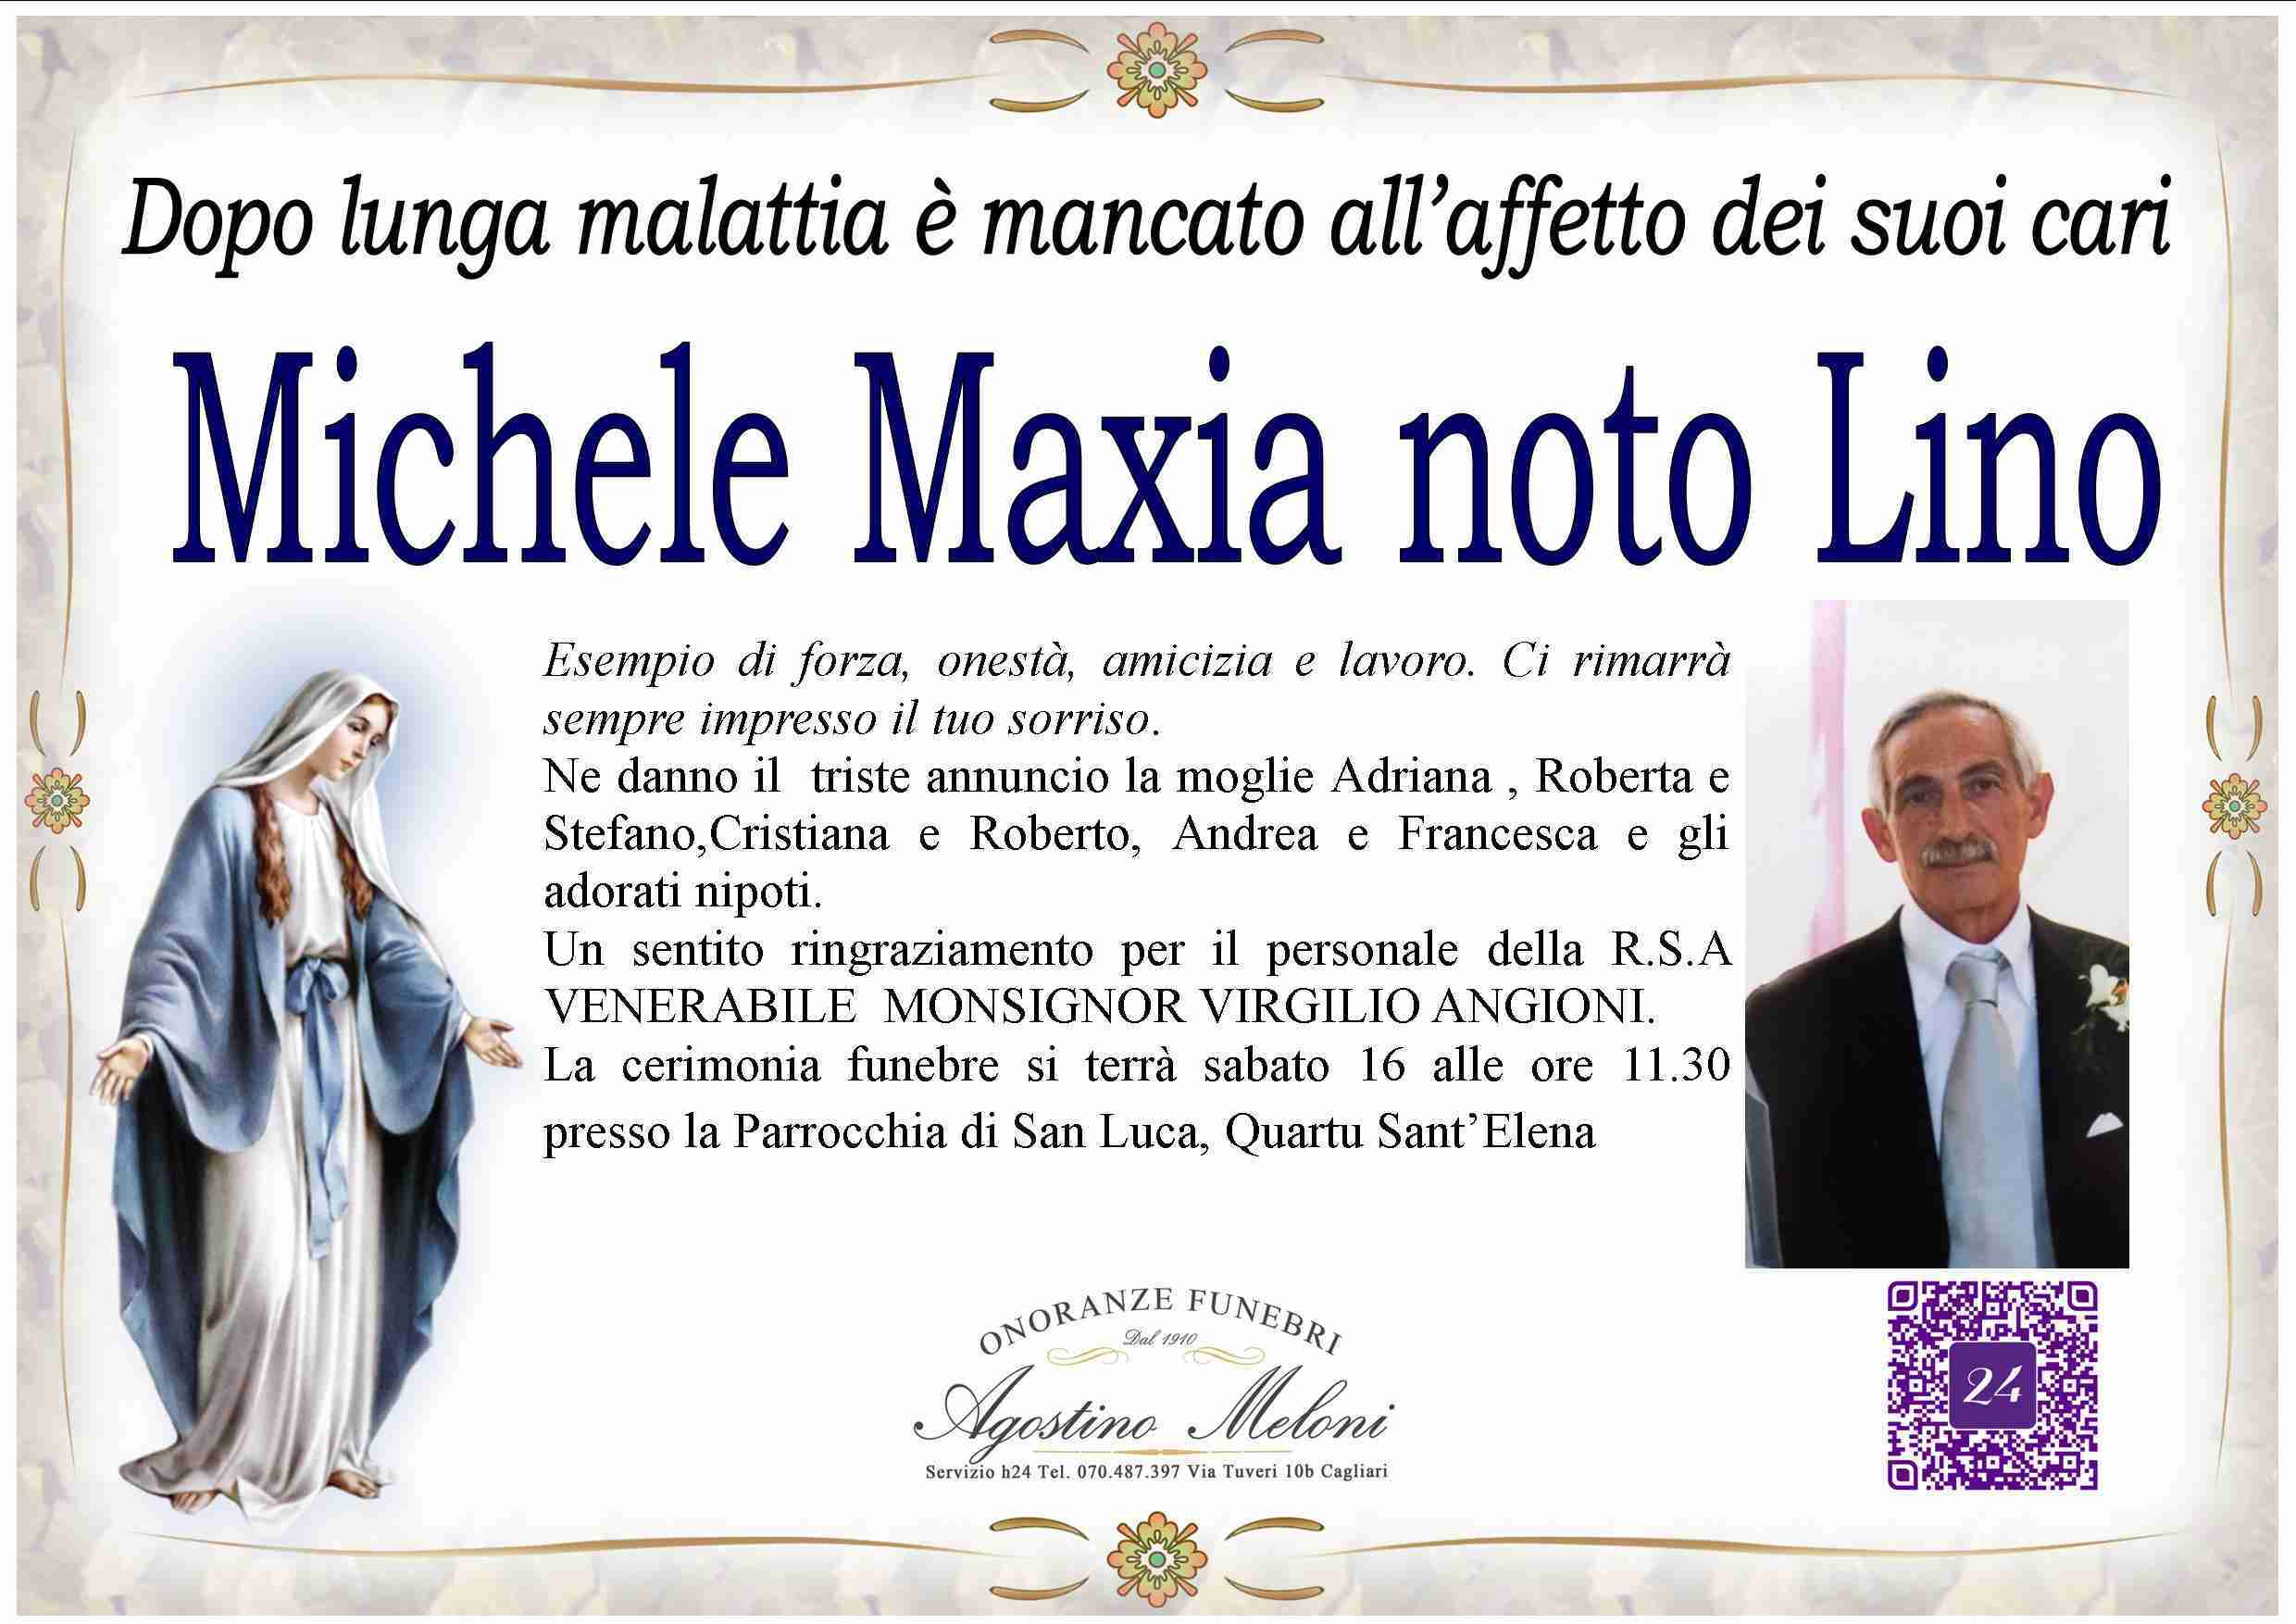 Michele Maxia